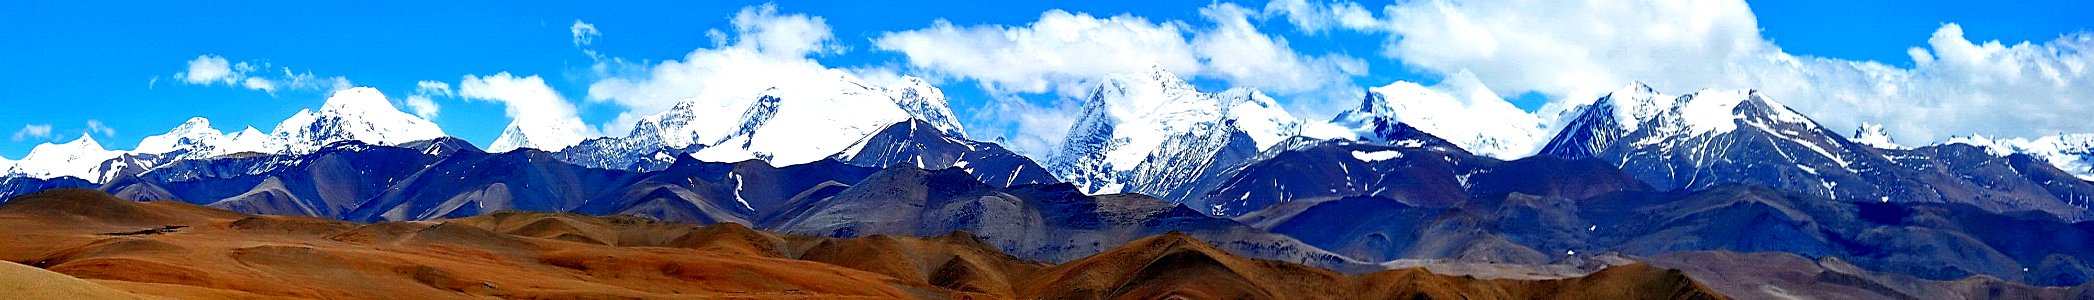 Himalayan North banner Lhakpa La pass photo